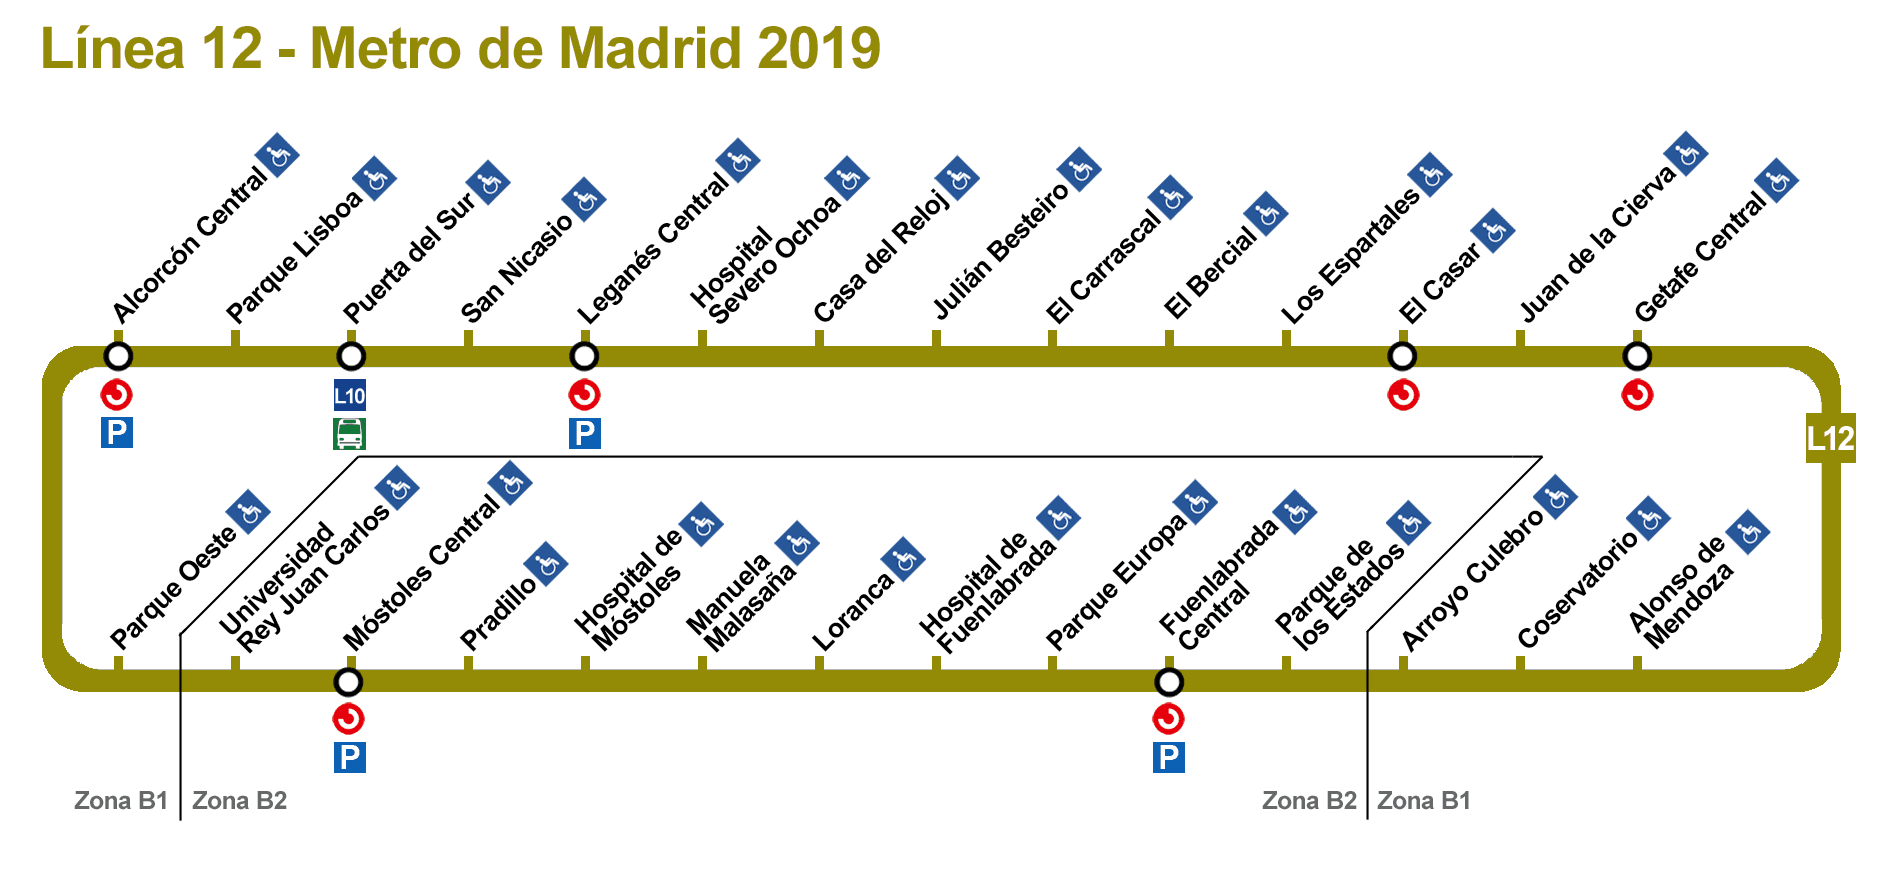 Мадрид метро линия 12. Линия 10 метро Мадрид. 12 Линия метро. Карта метро Мадрида.